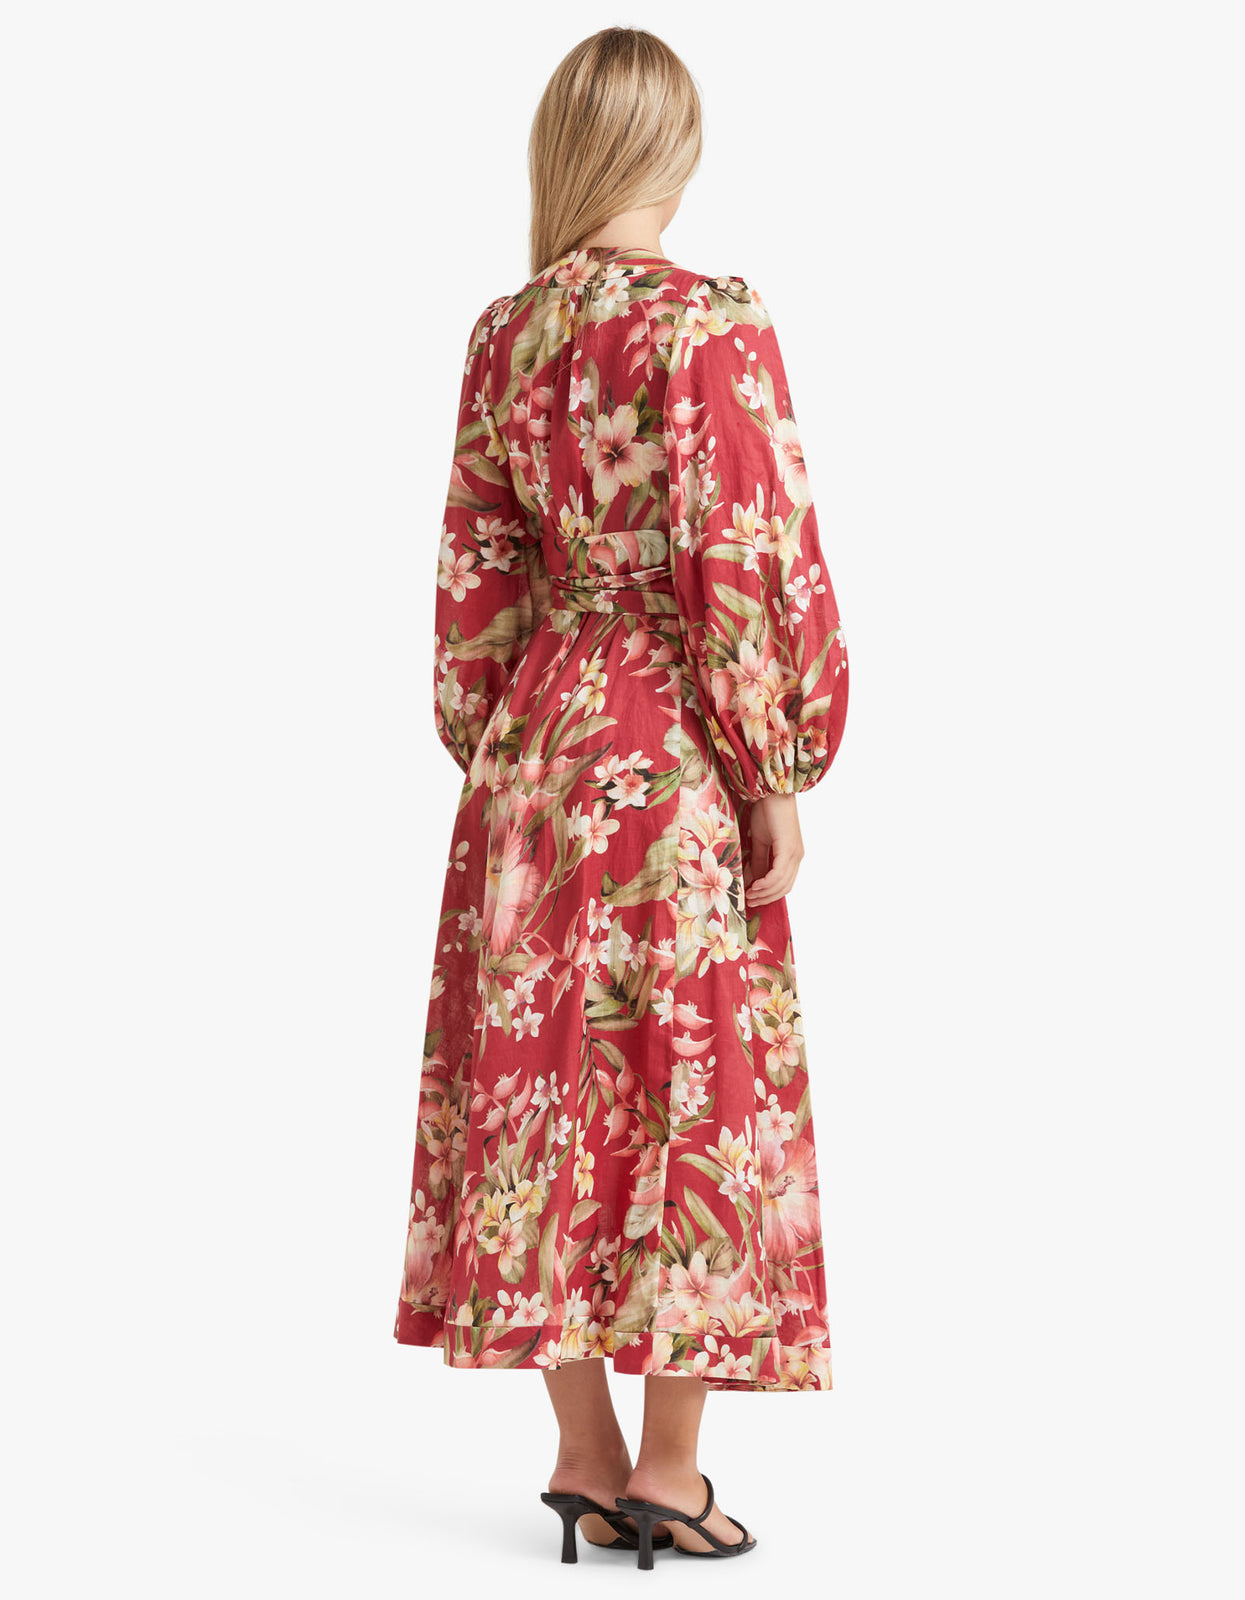 Superette | Lexi Wrap Long Dress - Red Palm